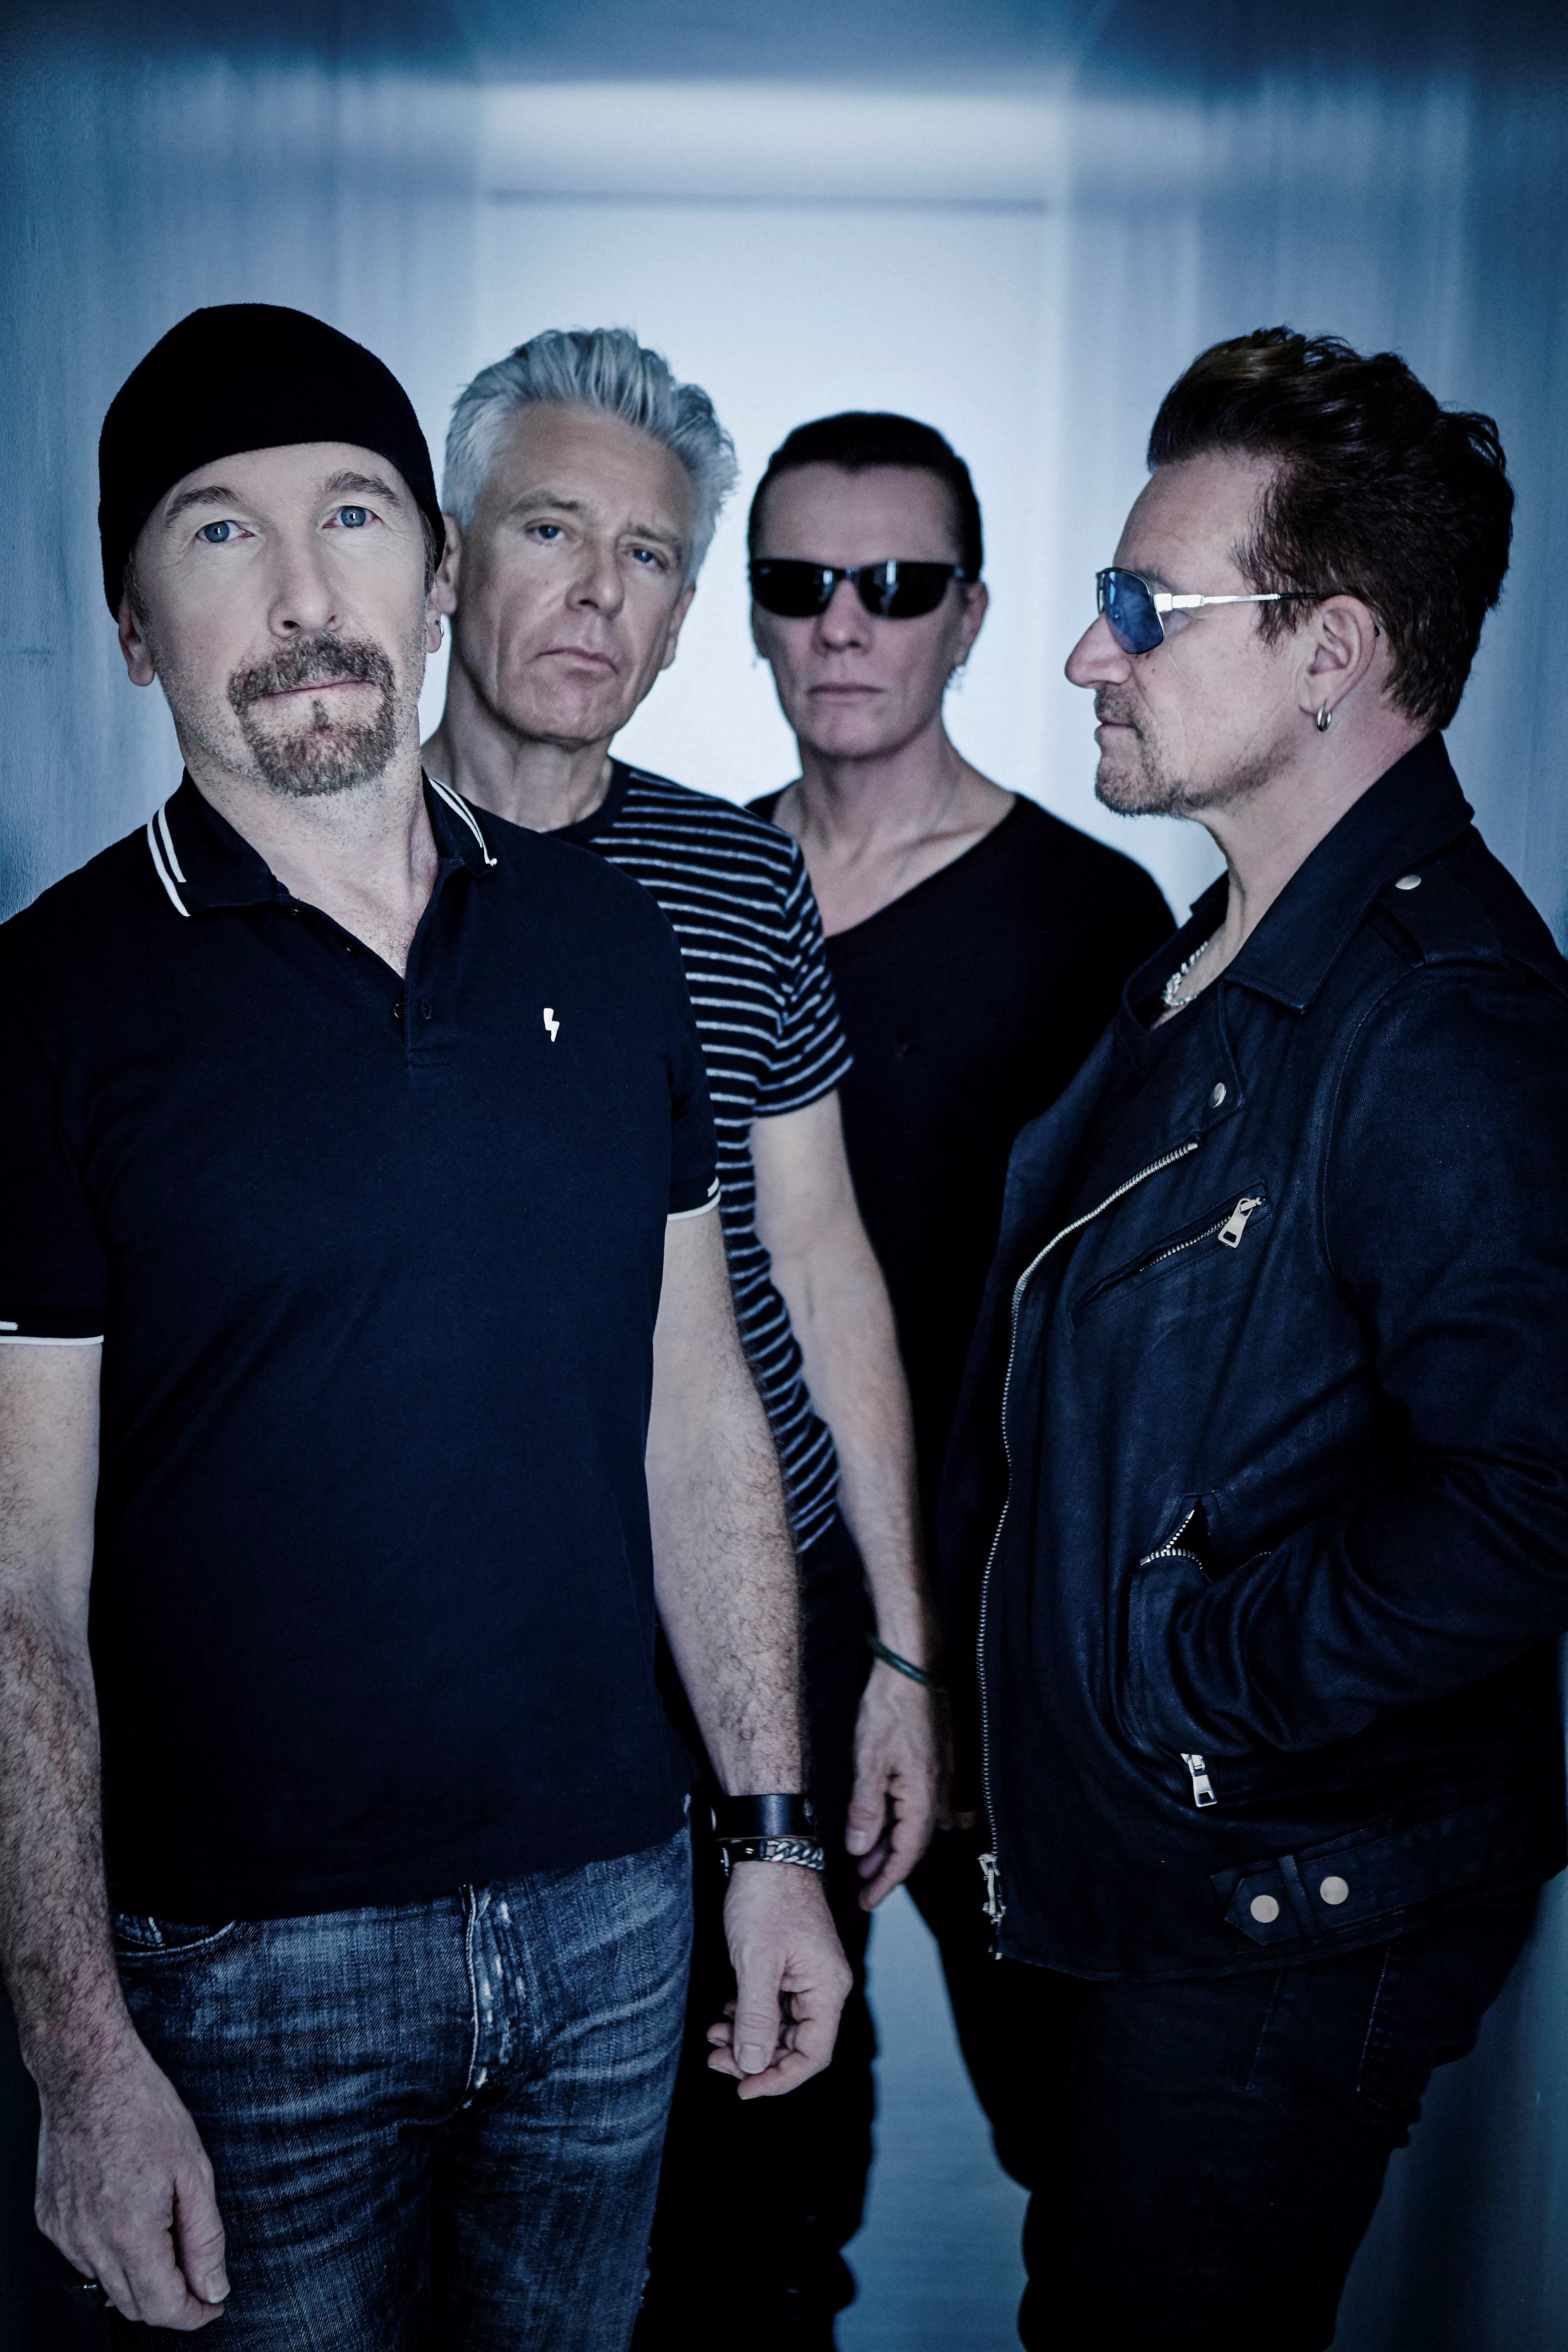 Derfor valgte U2 å utsette tirsdagens konsert i Argentina